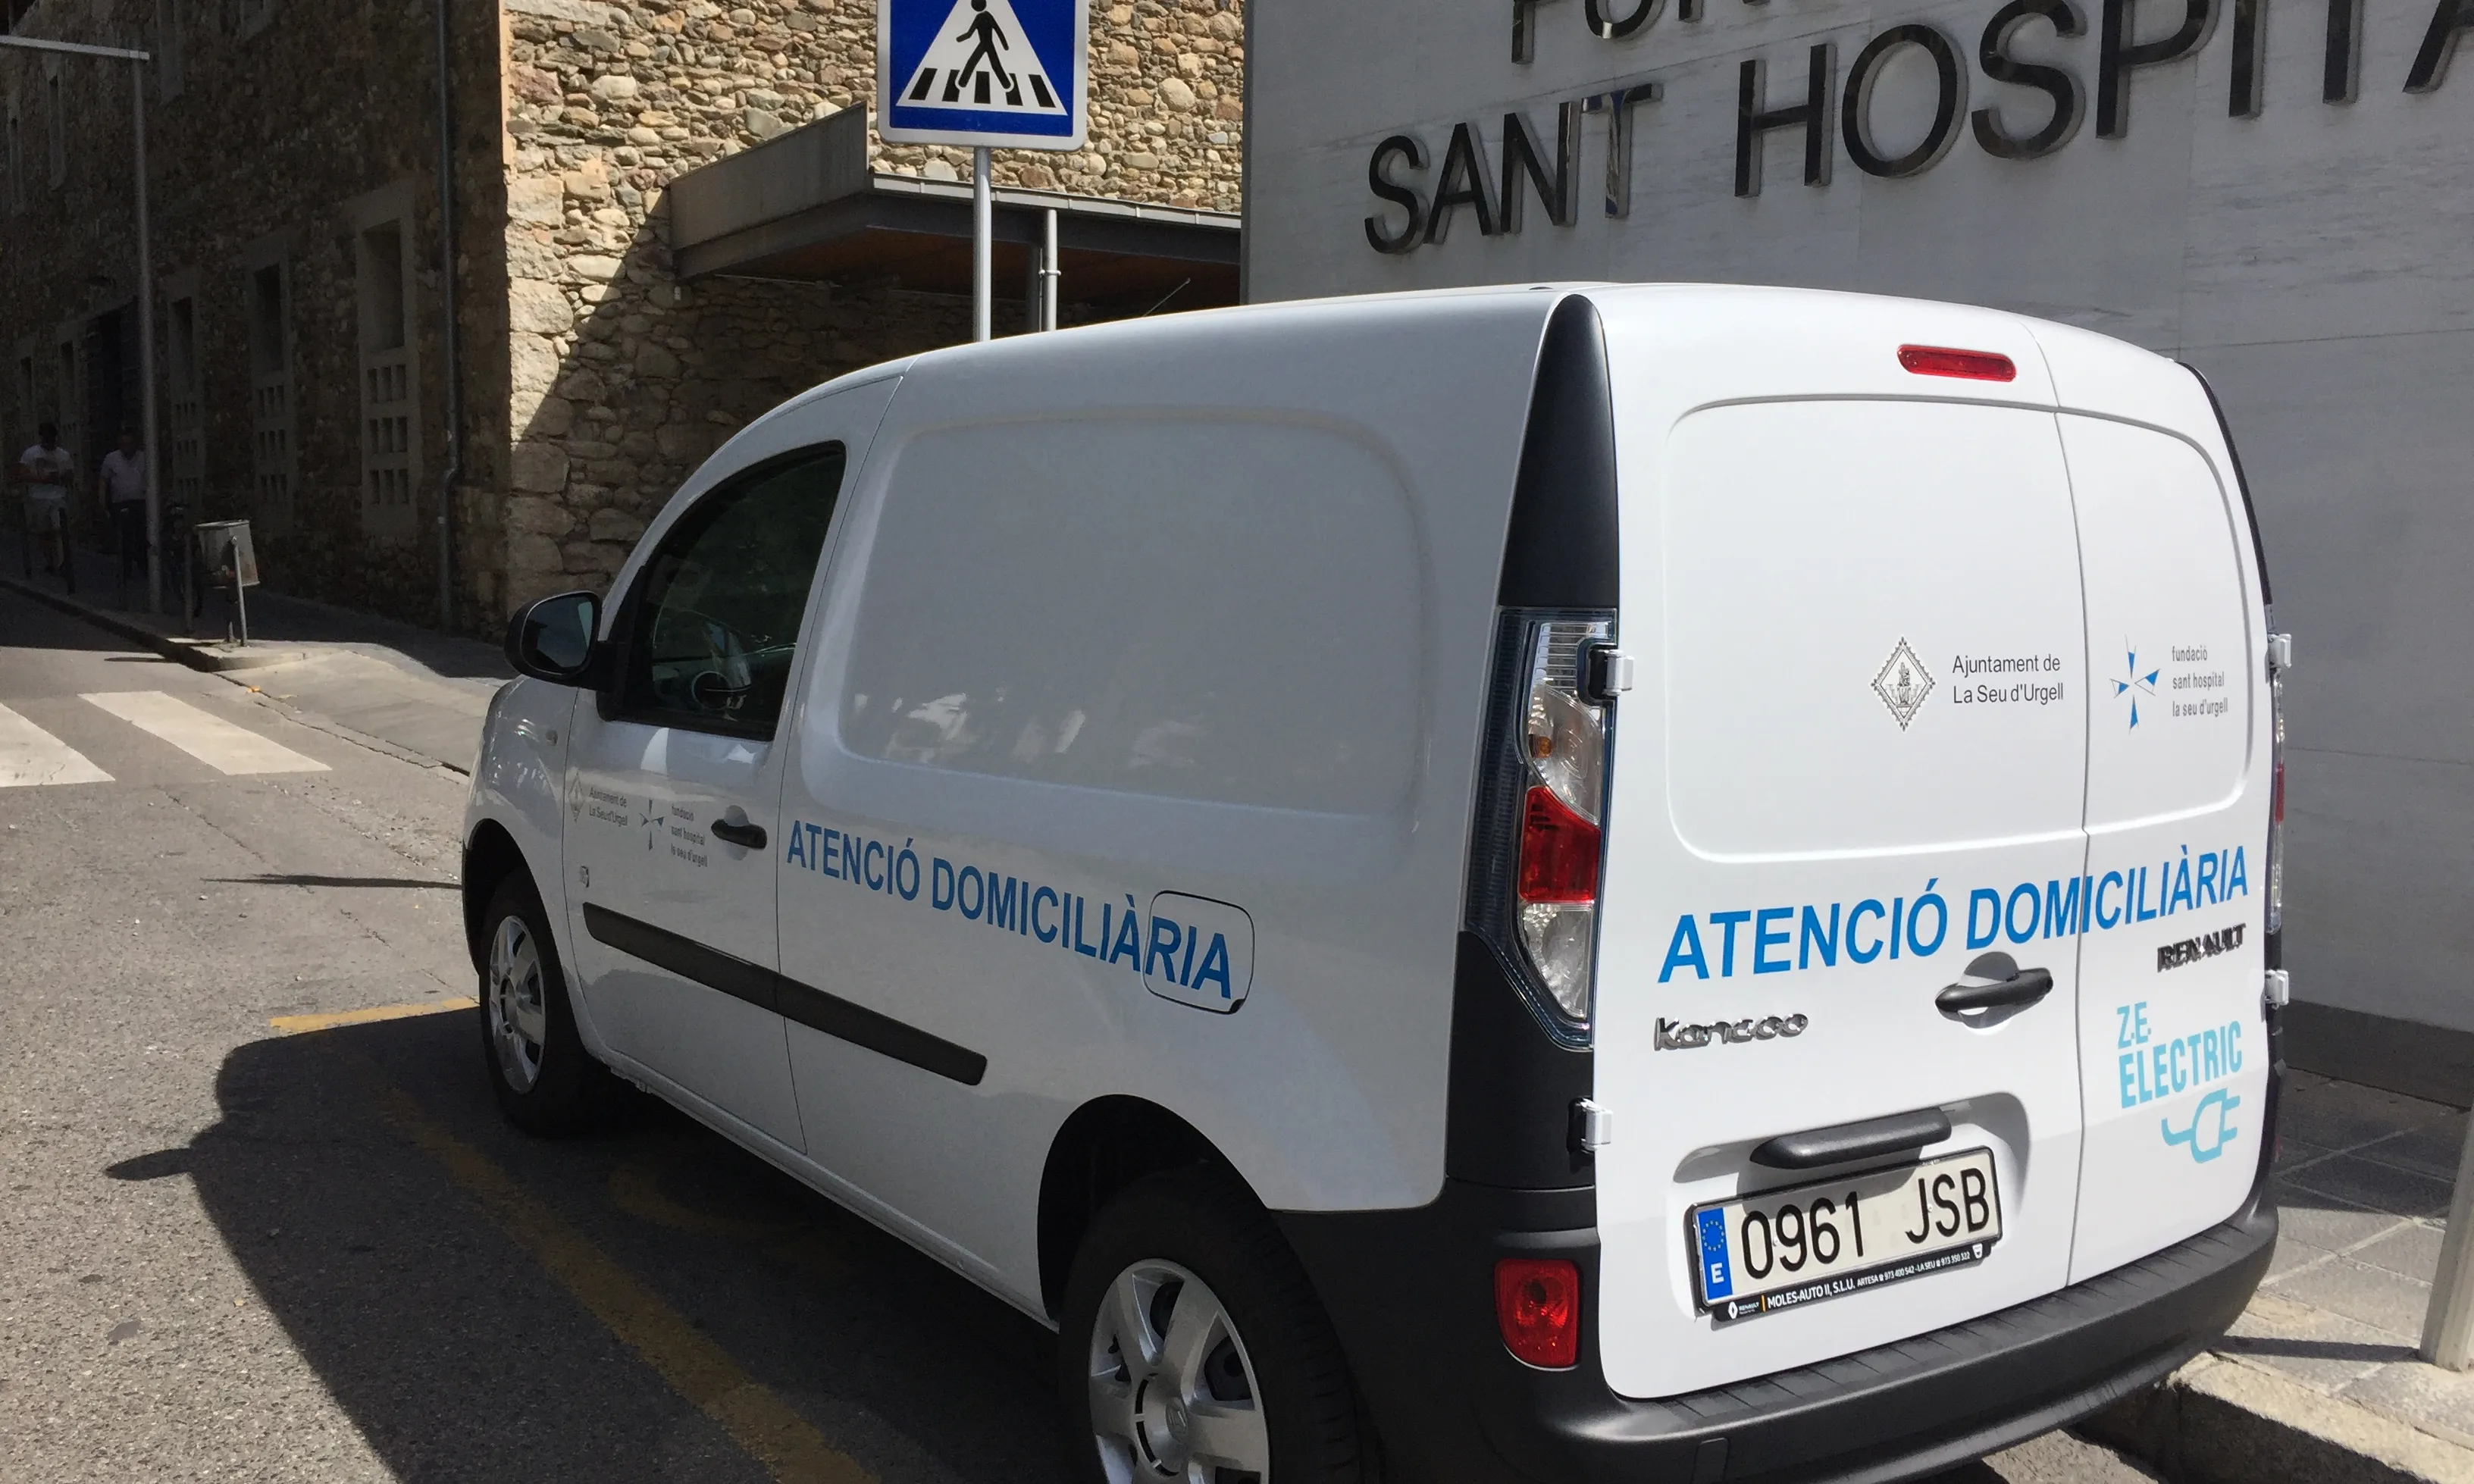 El vehicle elèctric de la Fundació Sant Hospital de la Seu d'Urgell (imatge: fsh.cat)